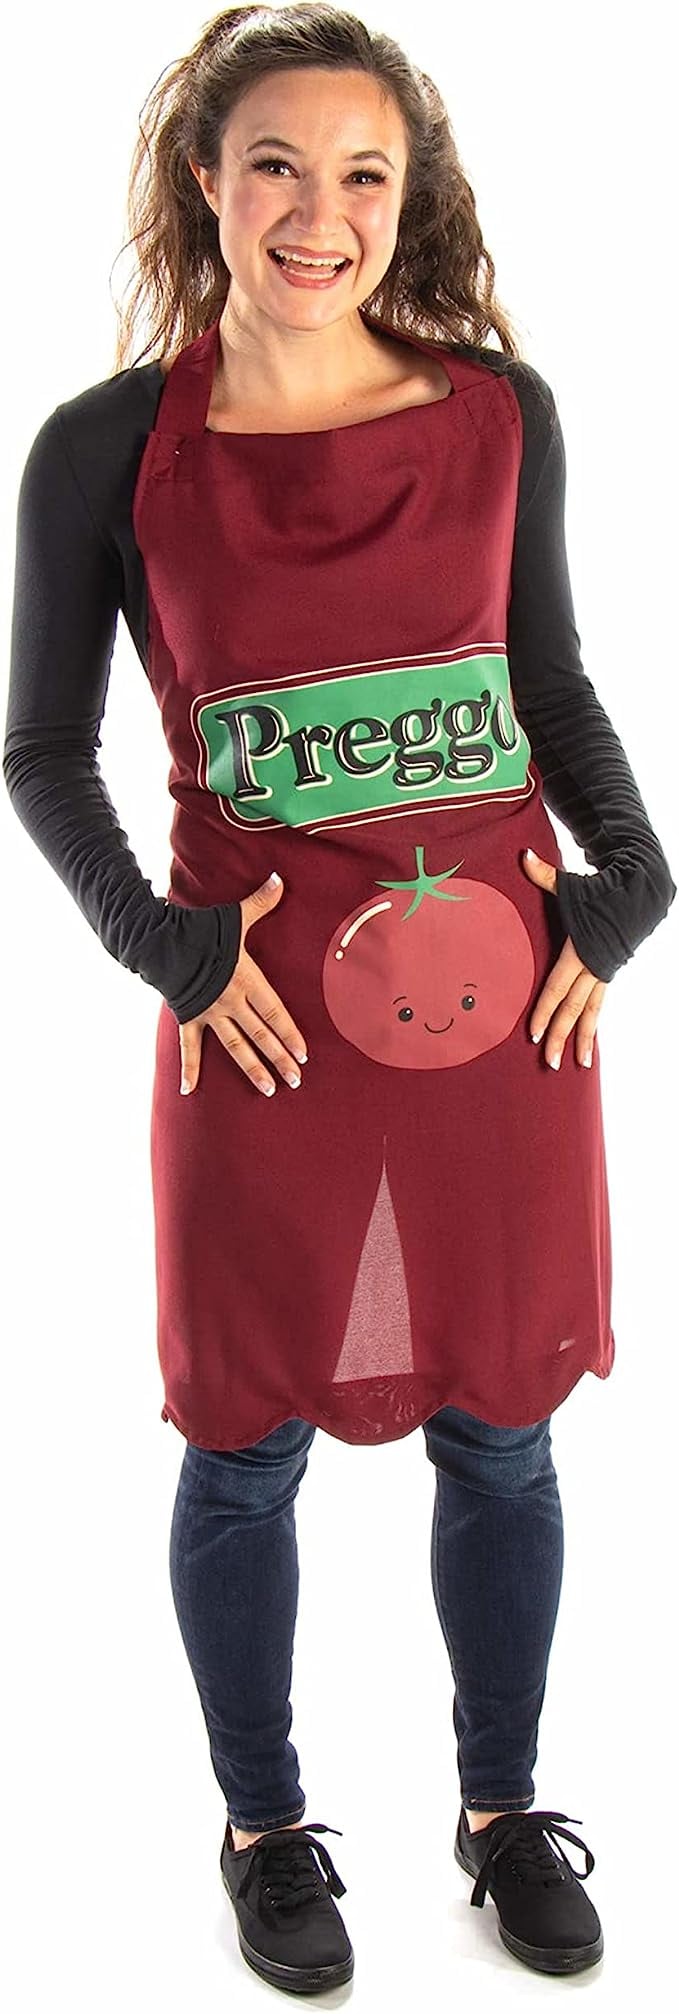 怀孕的万圣节服装的想法:番茄酱罐